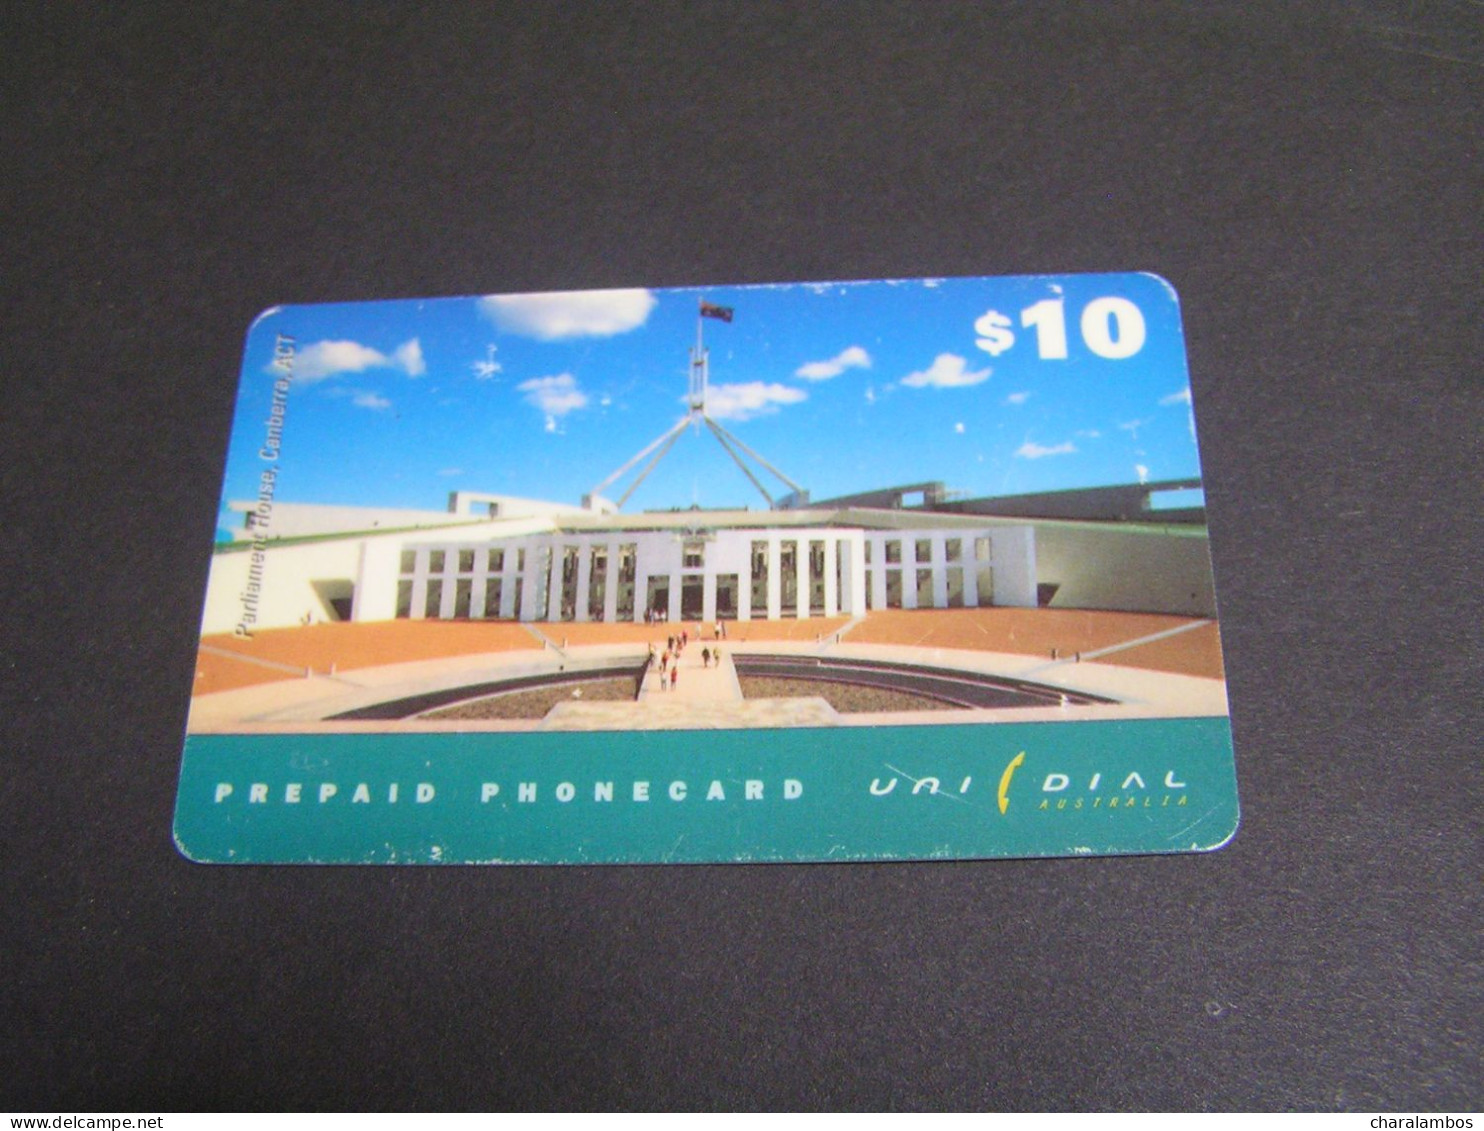 AUSTRALIA Prepaid Card. - Australien